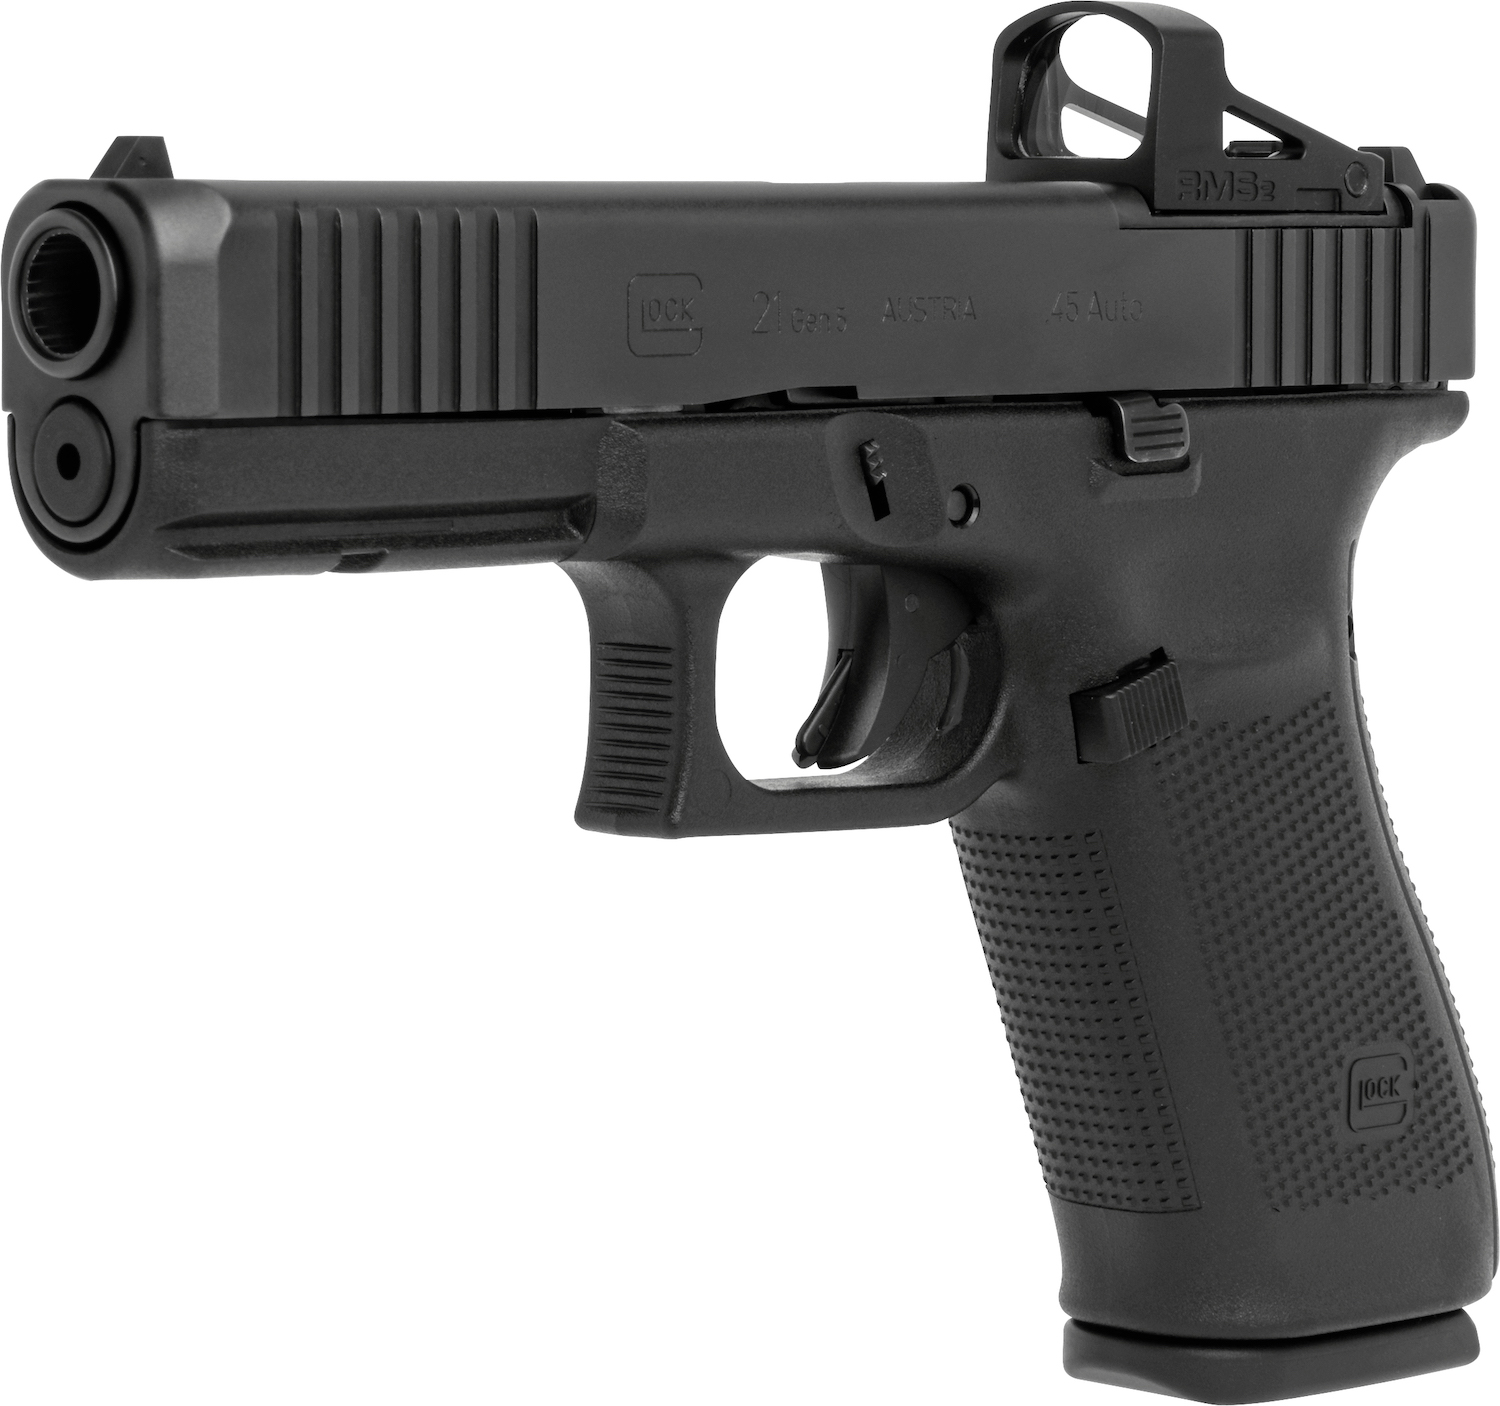 Pistole Glock 21 Gen5 FS MOS